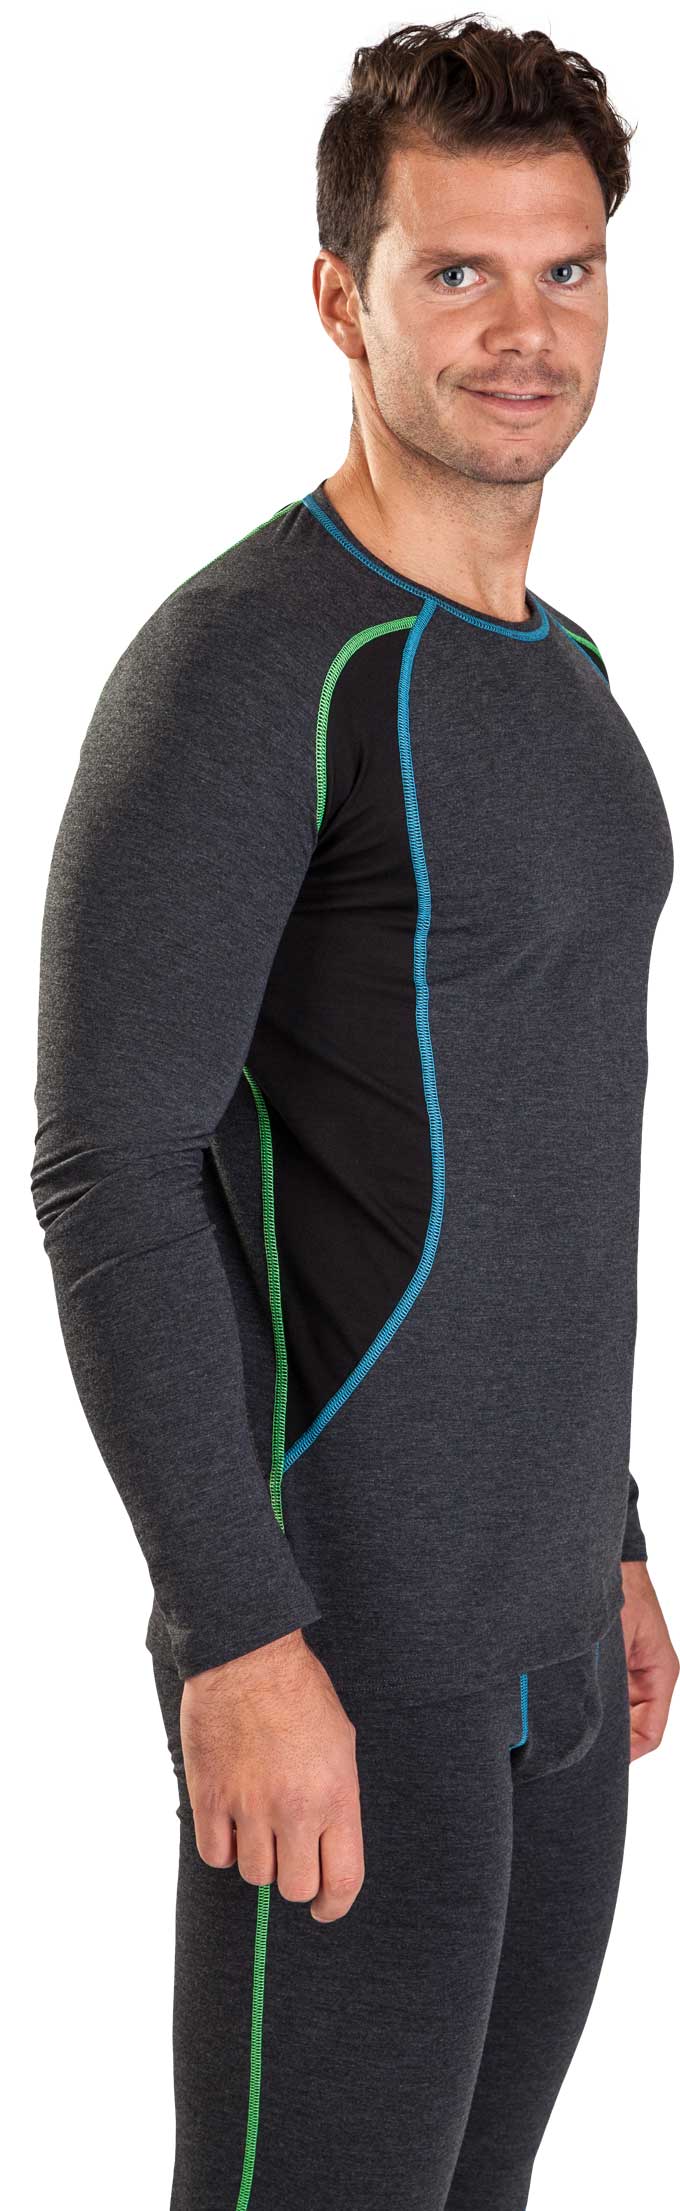 COOLMAX T-SHIRT MEN'S - Men's functional underwear